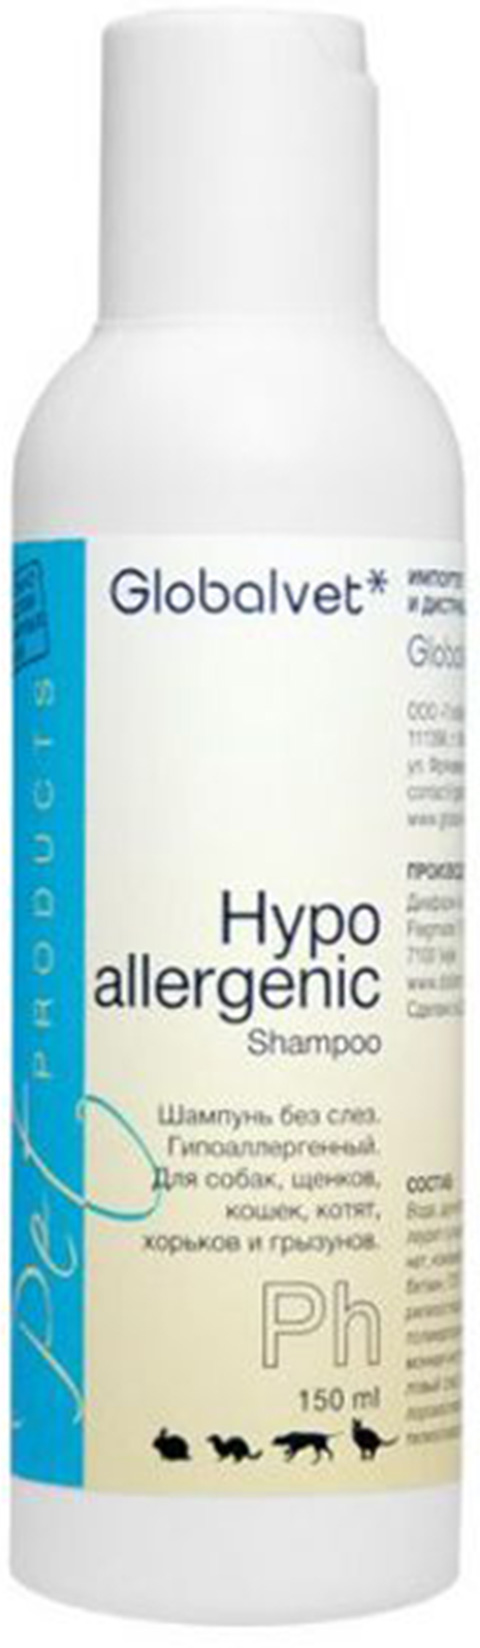 

Globalvet Hypoallergenic Shampoo шампунь для собак, кошек и хорьков гипоаллергенный (150 мл)